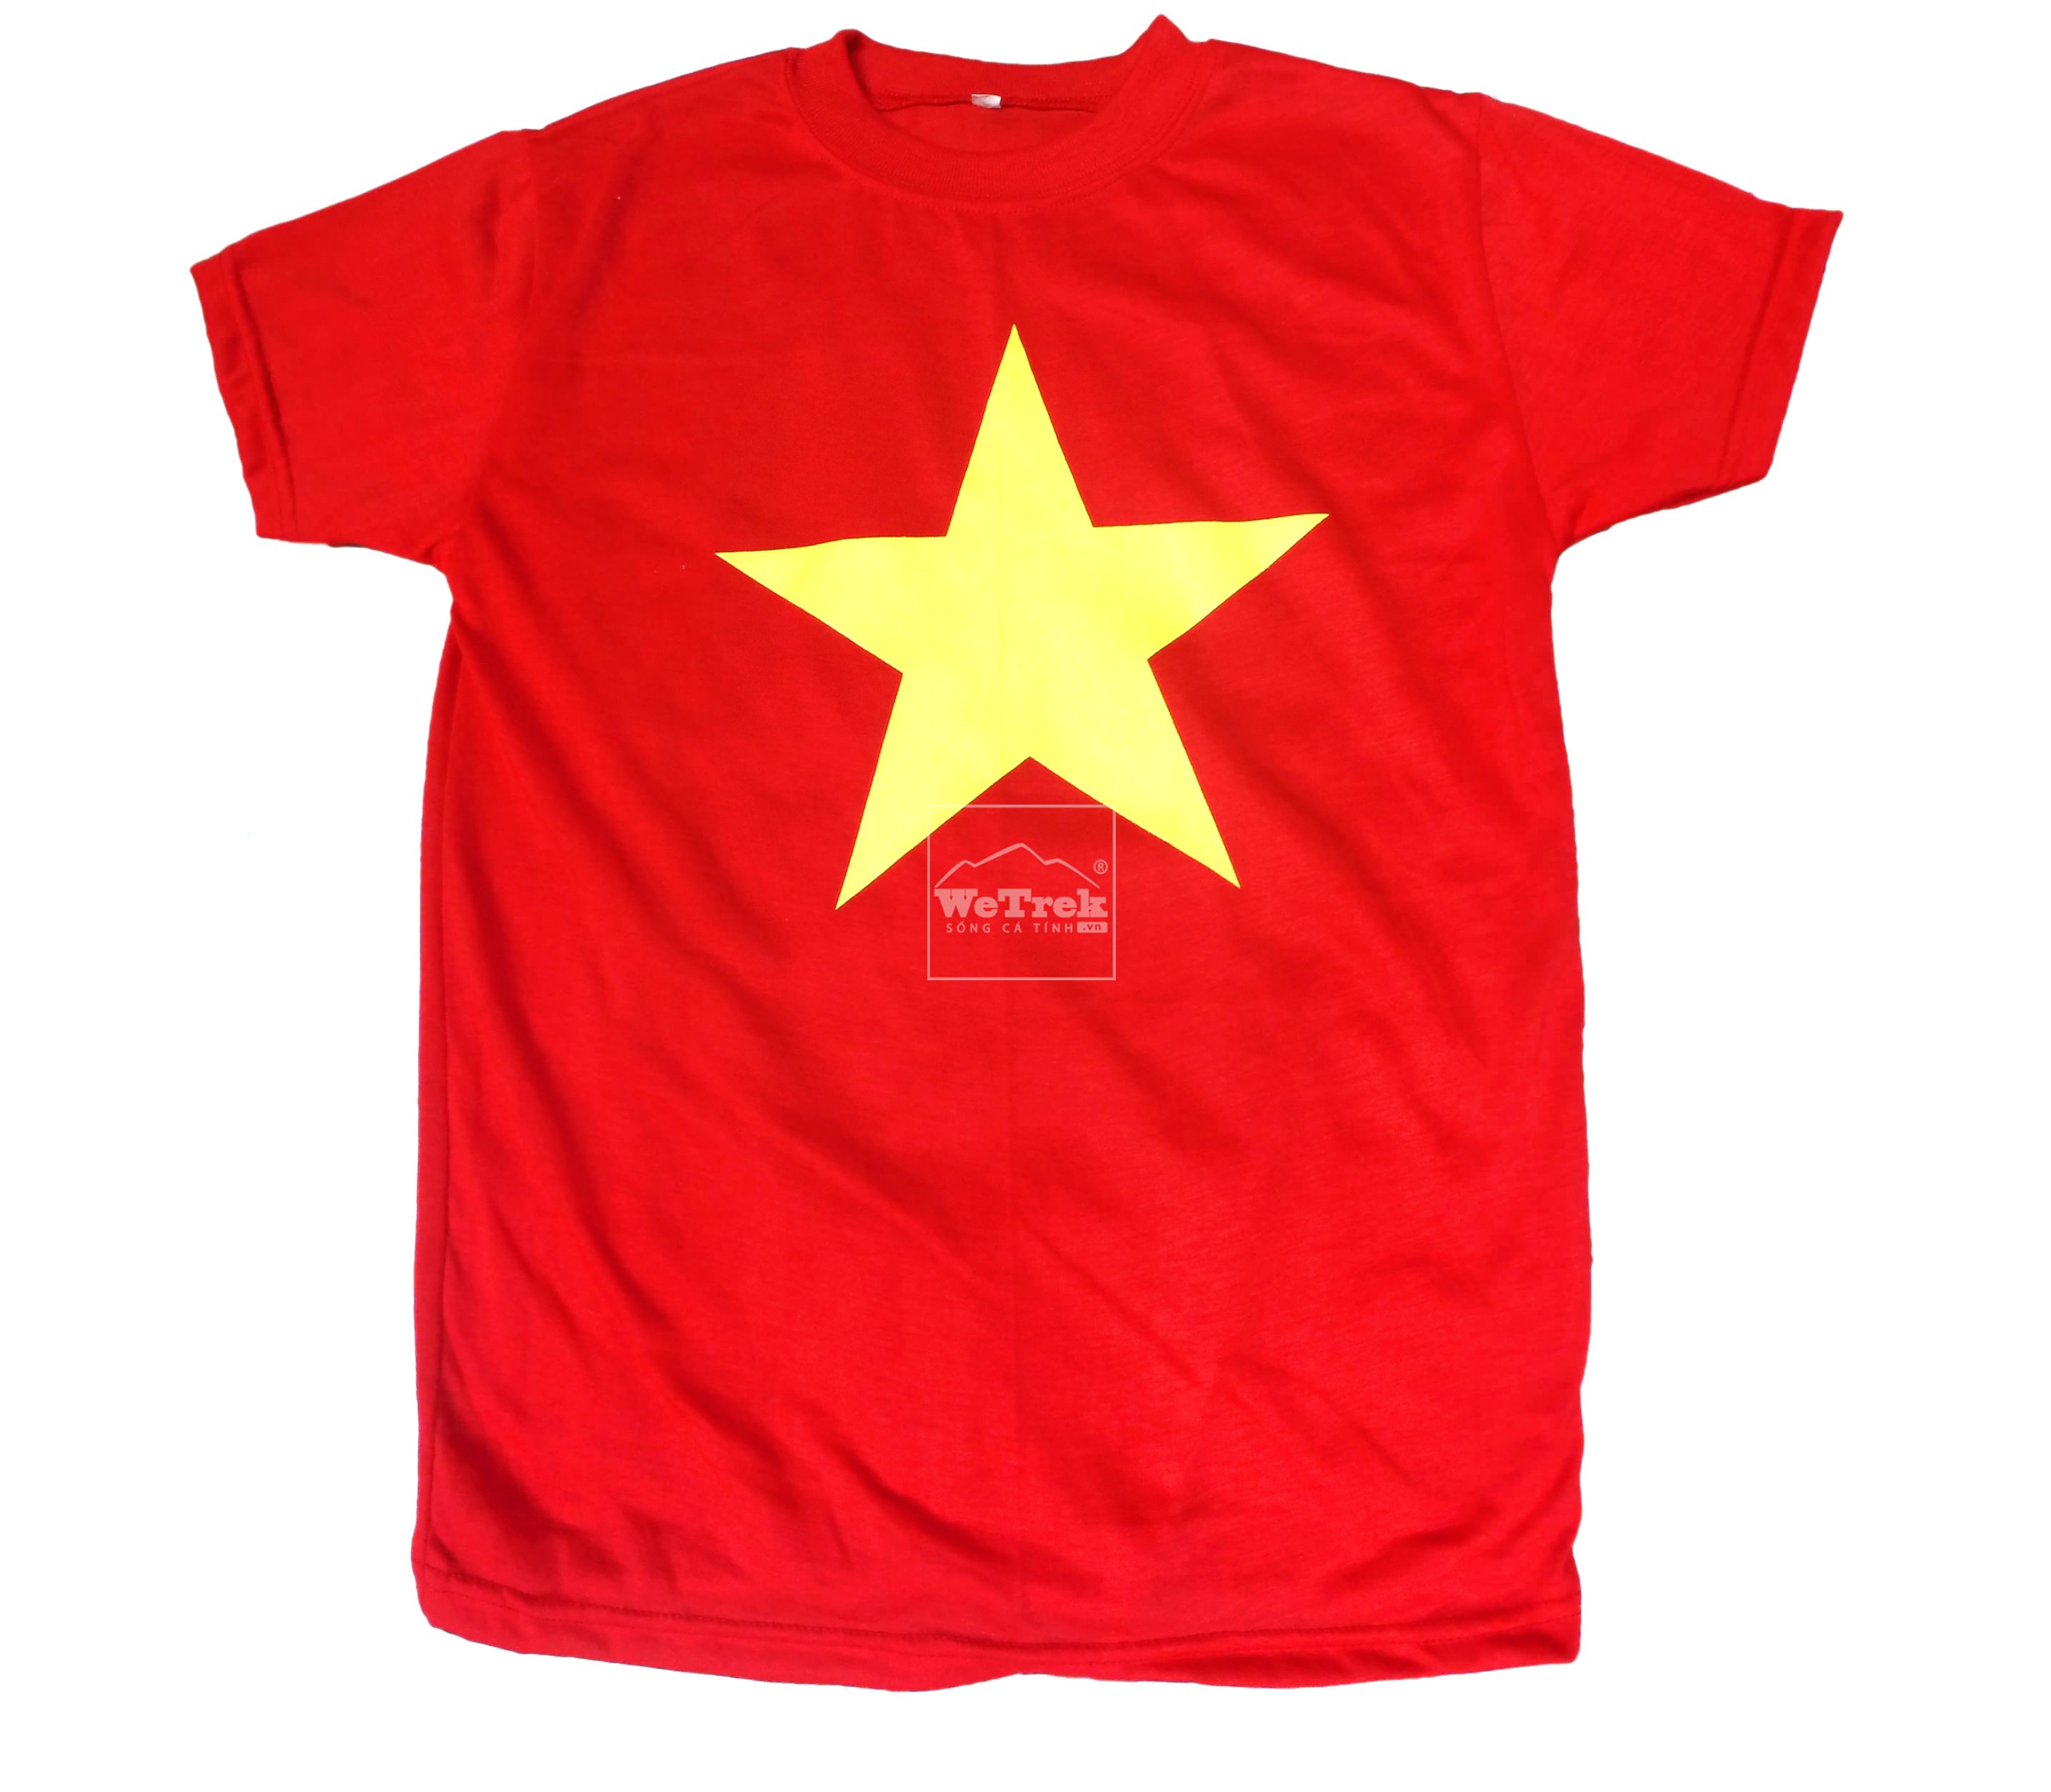 Áo Cờ Đỏ Sao Vàng: Áo cờ đỏ sao vàng đã trở thành một biểu tượng quan trọng của đất nước Việt Nam. Người Việt Nam luôn tự hào khi mặc áo này để biểu lộ tinh thần yêu nước và tự do. Hãy cùng chúng tôi e ngại giới hạn thời gian và khám phá kỷ nguyên mới với chiếc áo cờ đỏ sao vàng, cho dù bạn ở đâu trên thế giới.